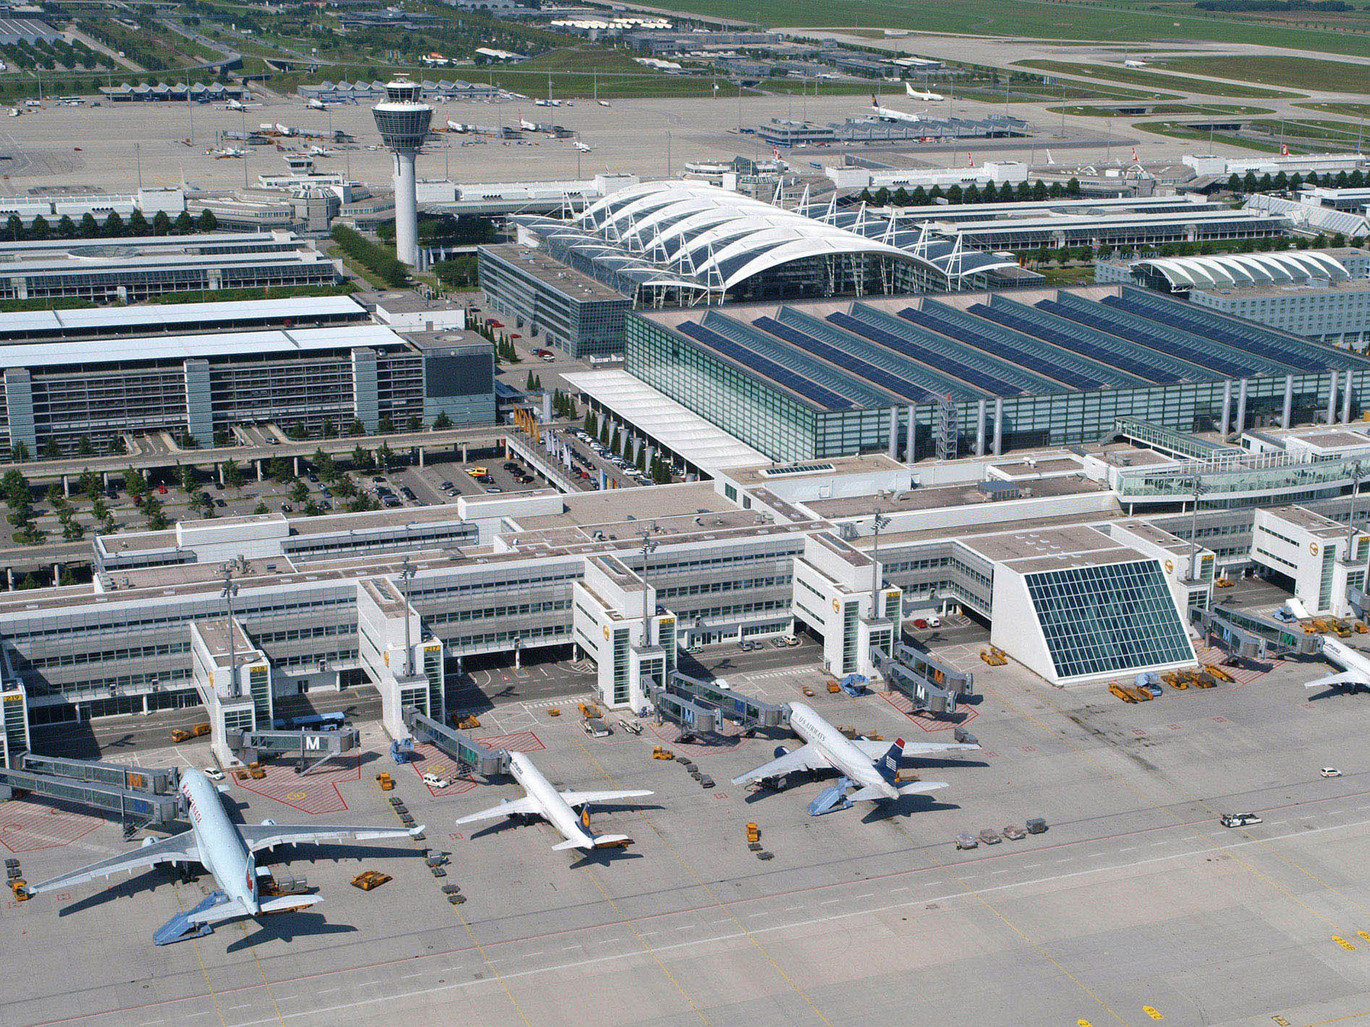 Flughafen-München-Flugzeuge-Blick-auf-Dächer